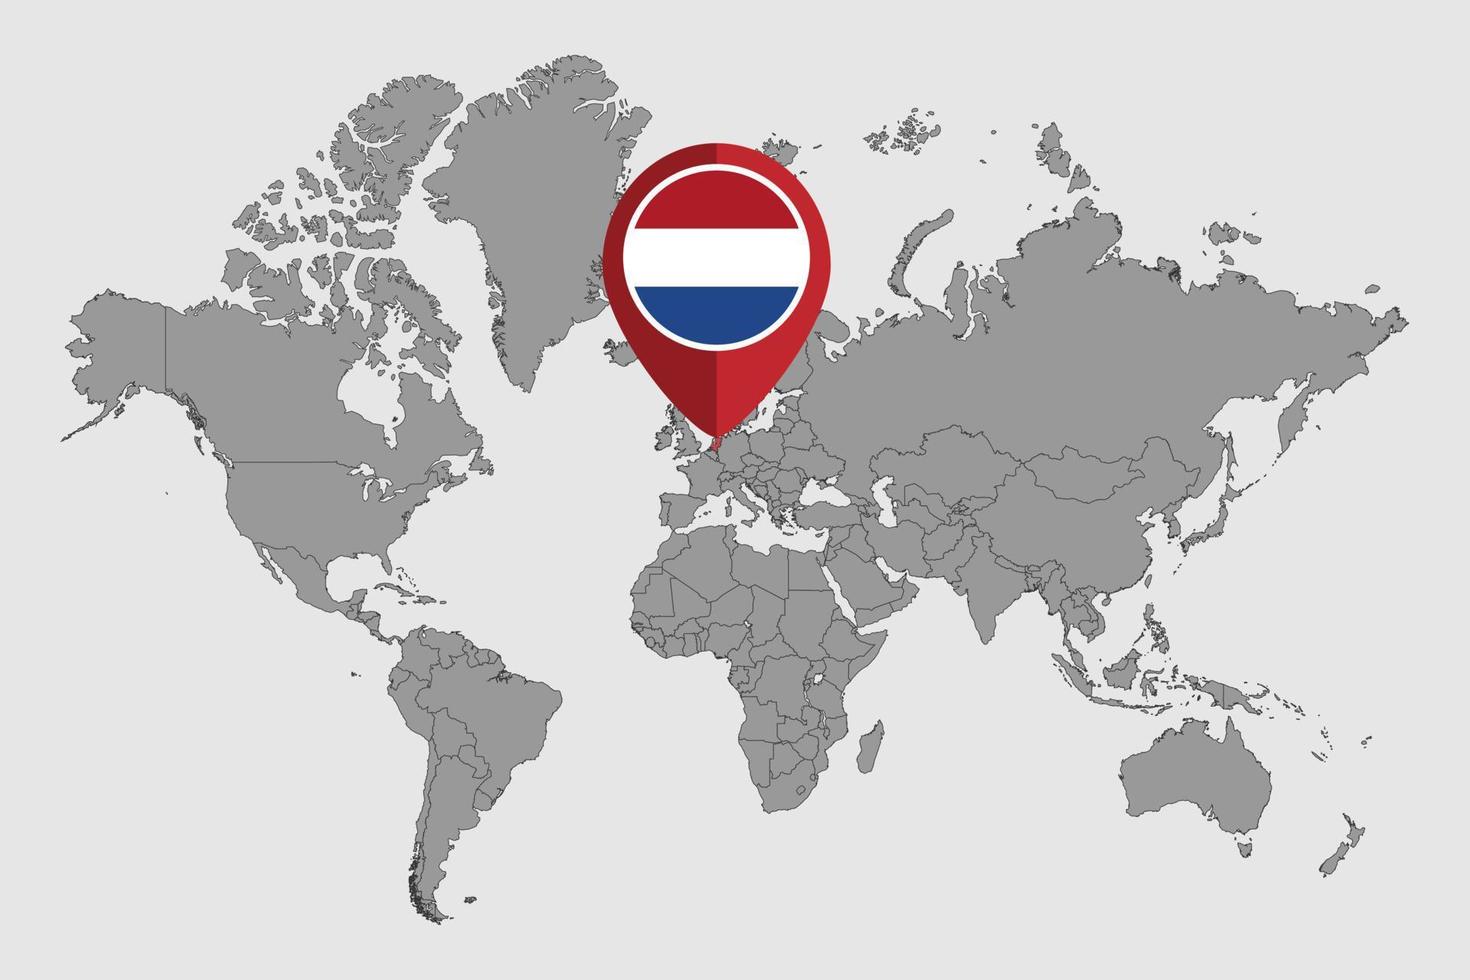 nålkarta med nederländska flaggan på världskartan. vektor illustration.